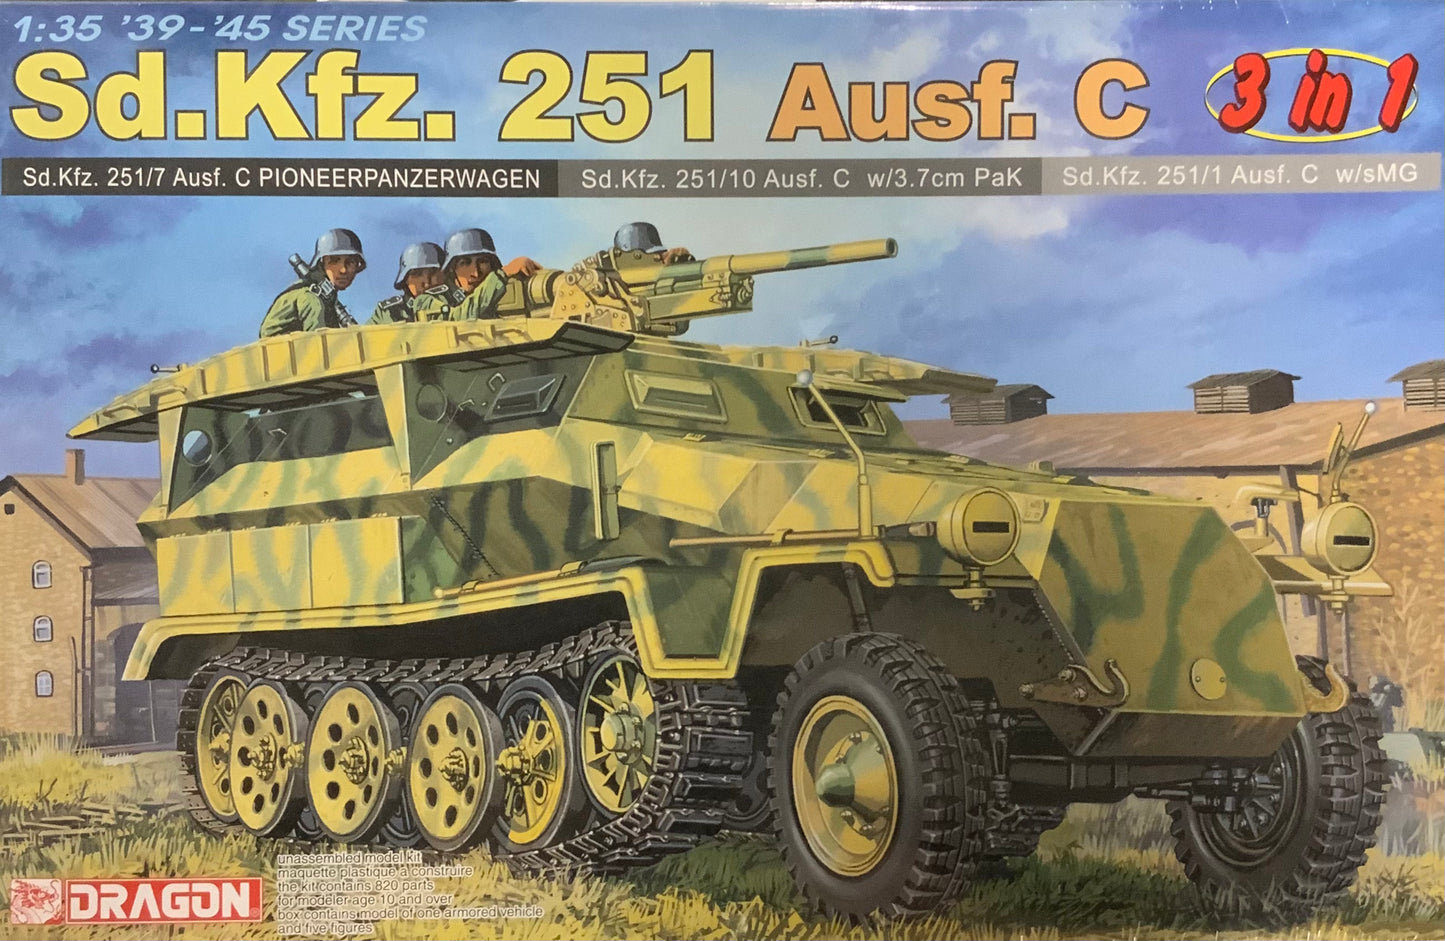 SS.Kfz.251 Ausf.C 3 in 1 Tank Model Kit